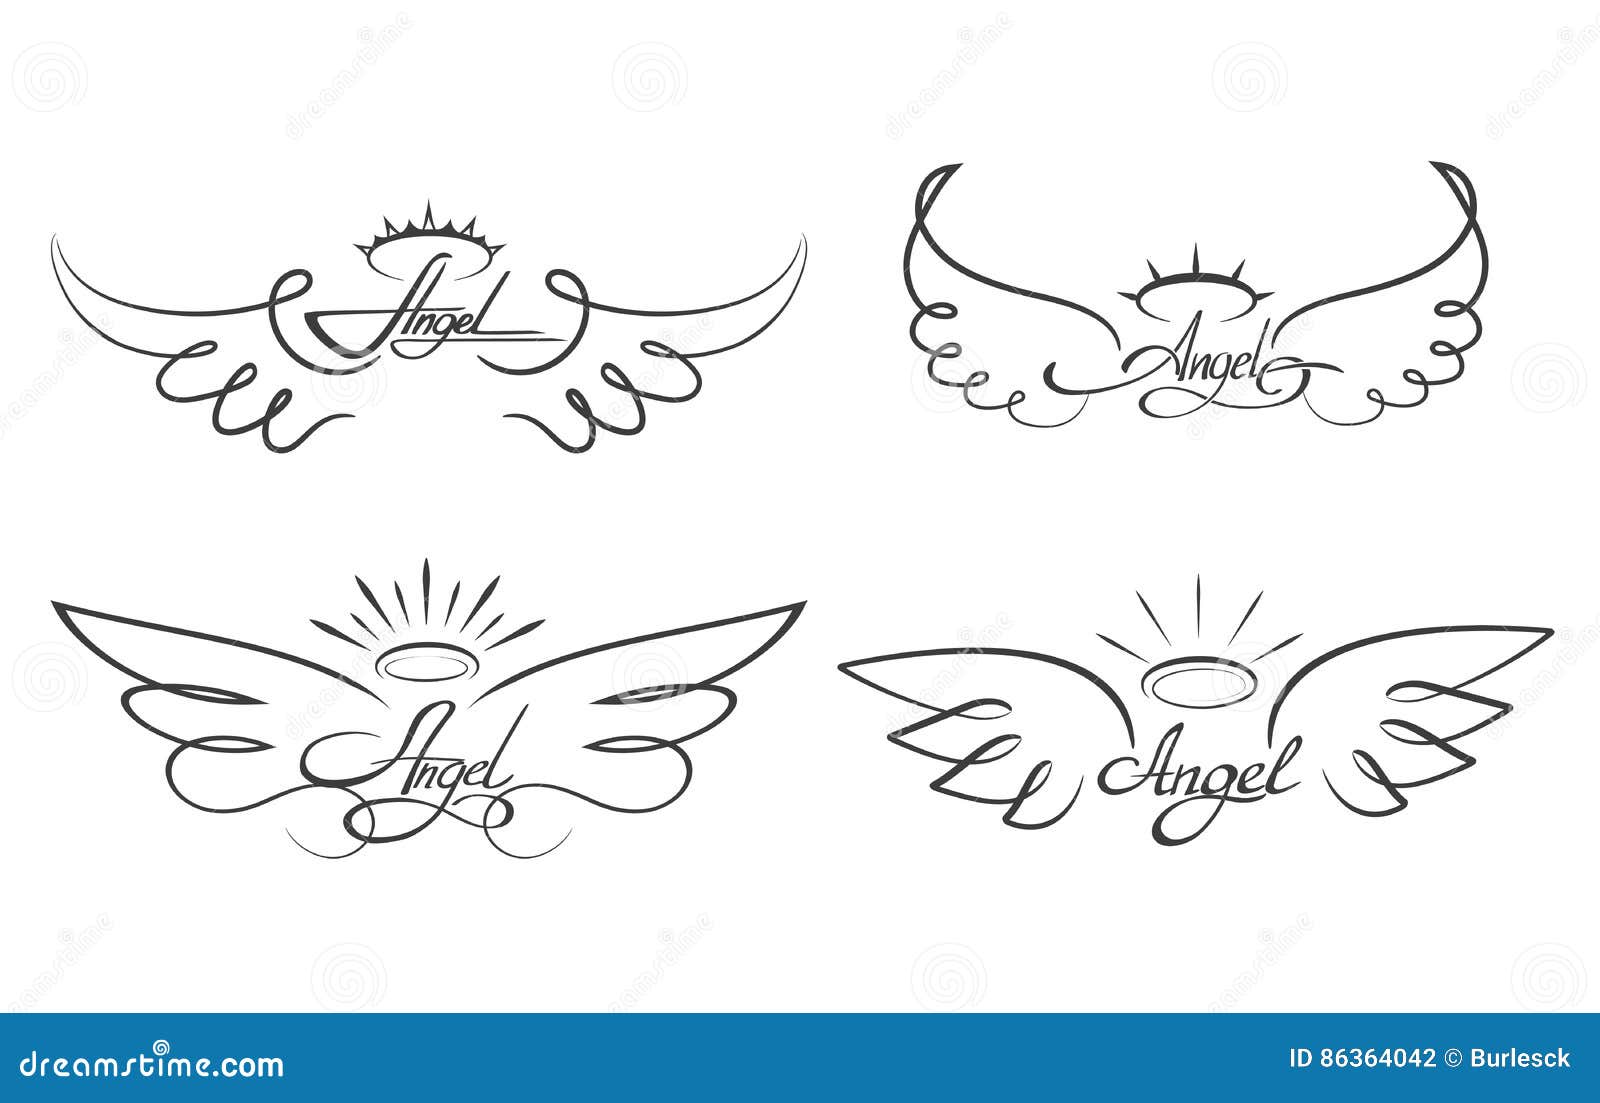 Символ два крыла. Крылья тату эскиз. Крылья с нимбом эскиз. Мини тату Крылья эскиз. Эскиз тату крыло с надписью.